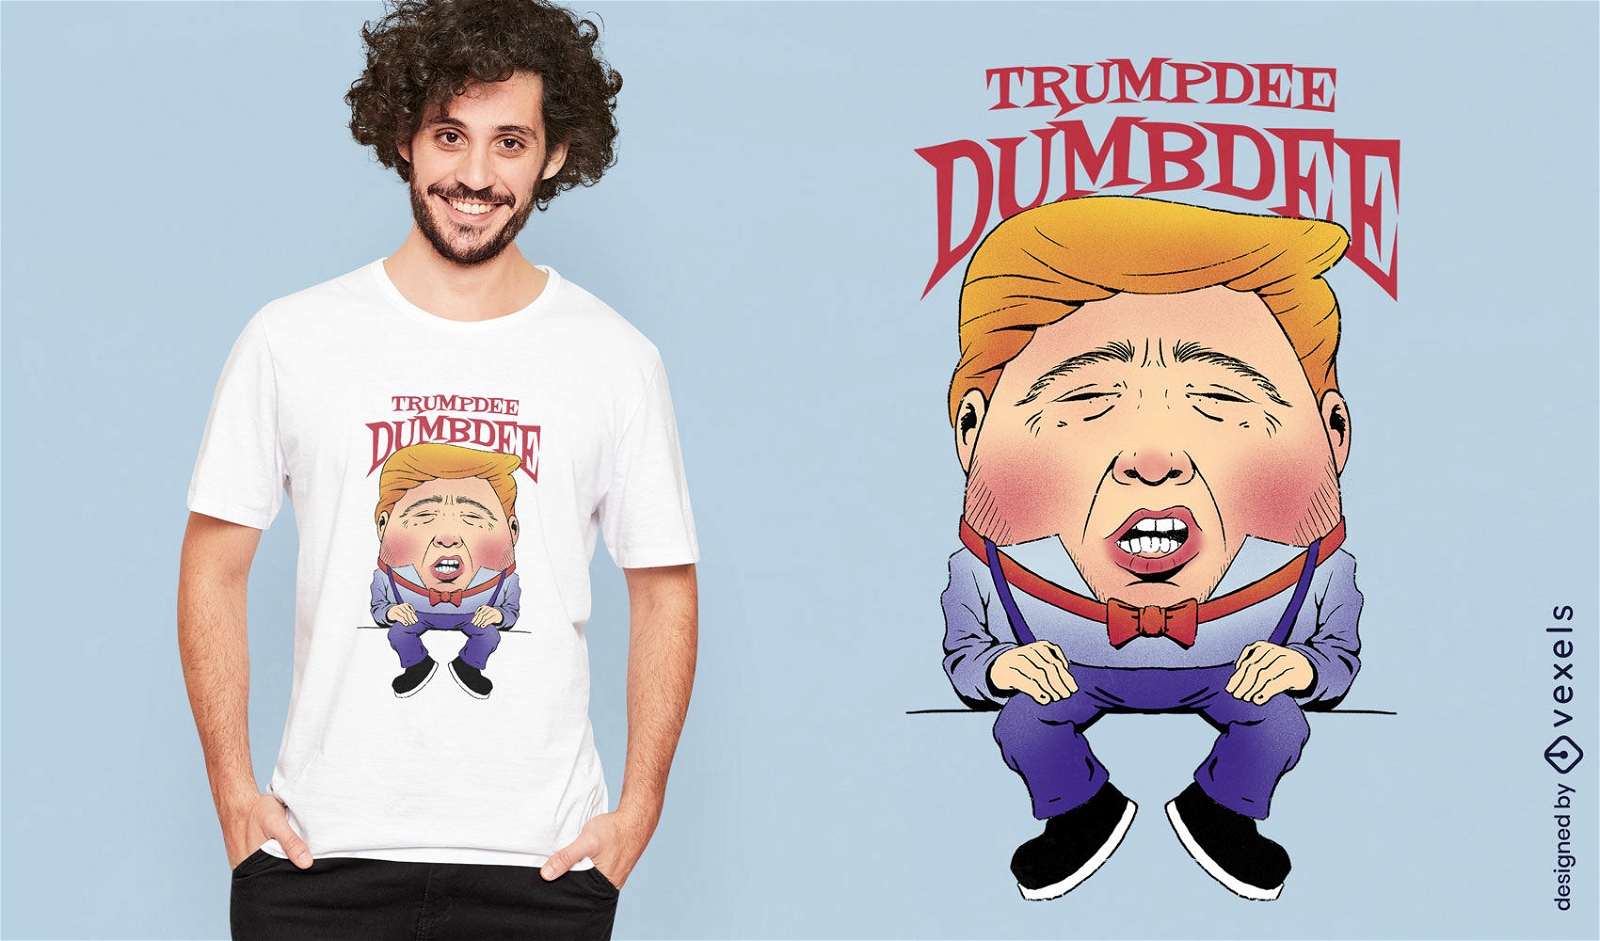 Design engra?ado da camiseta do presidente dos EUA